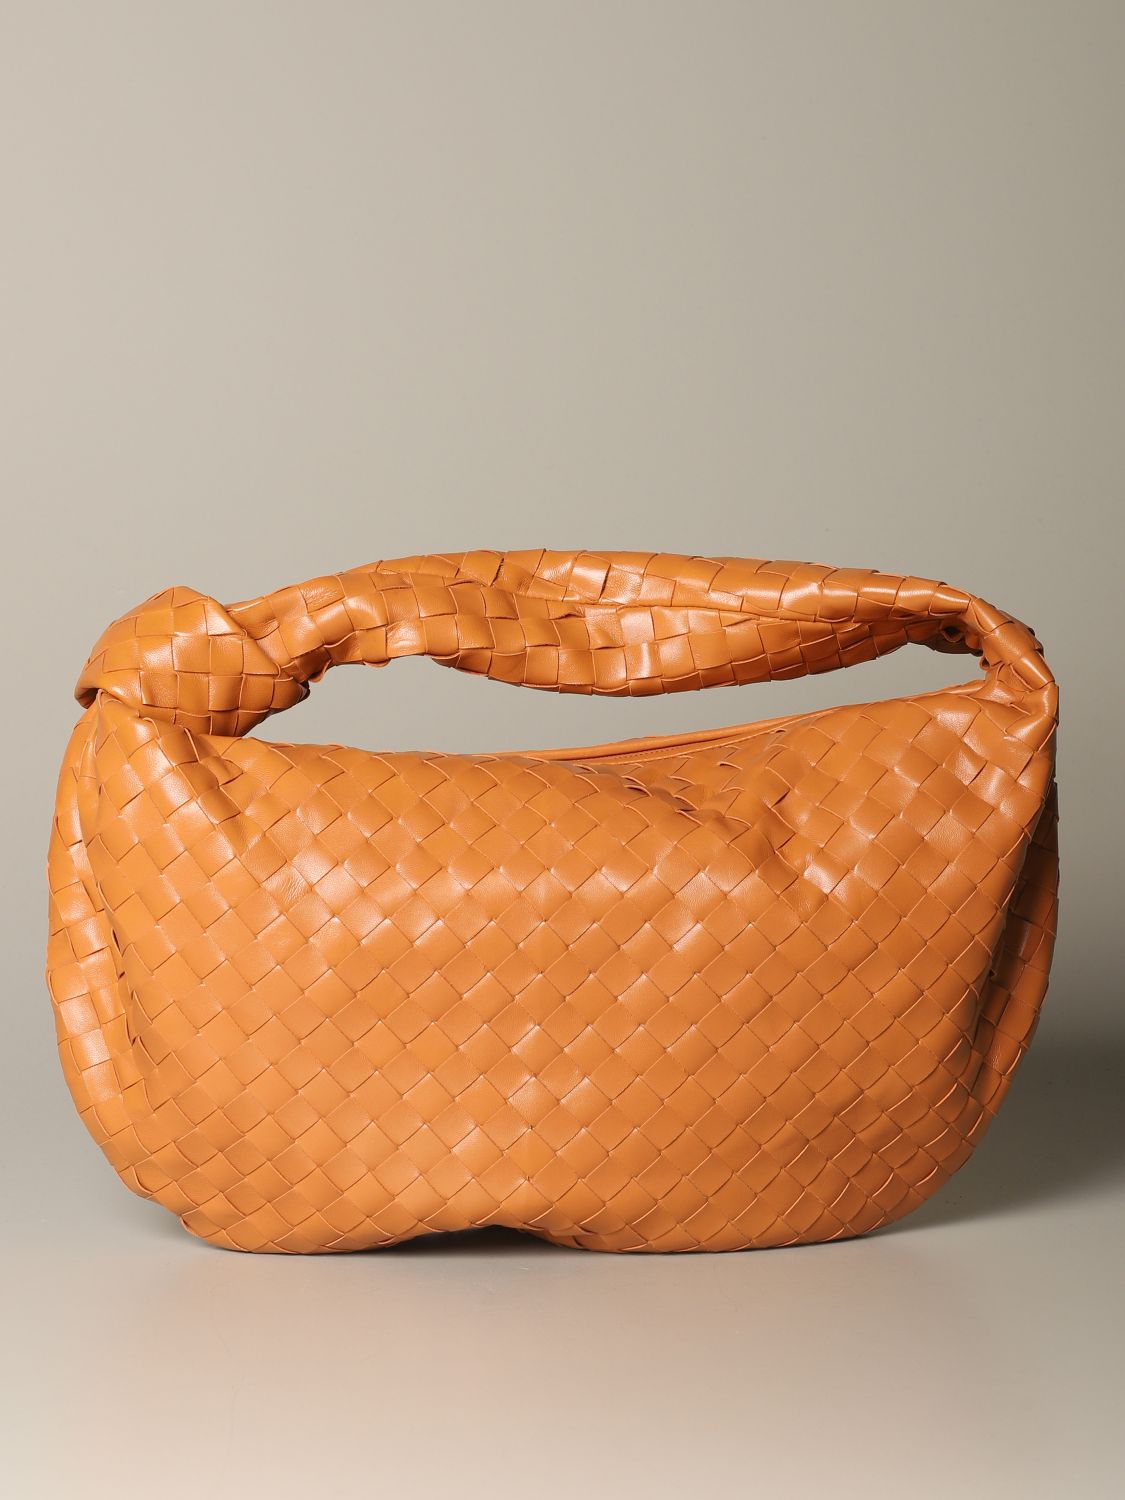 BOTTEGA VENETA: Jodie hobo bag in woven leather - Camel | Bottega